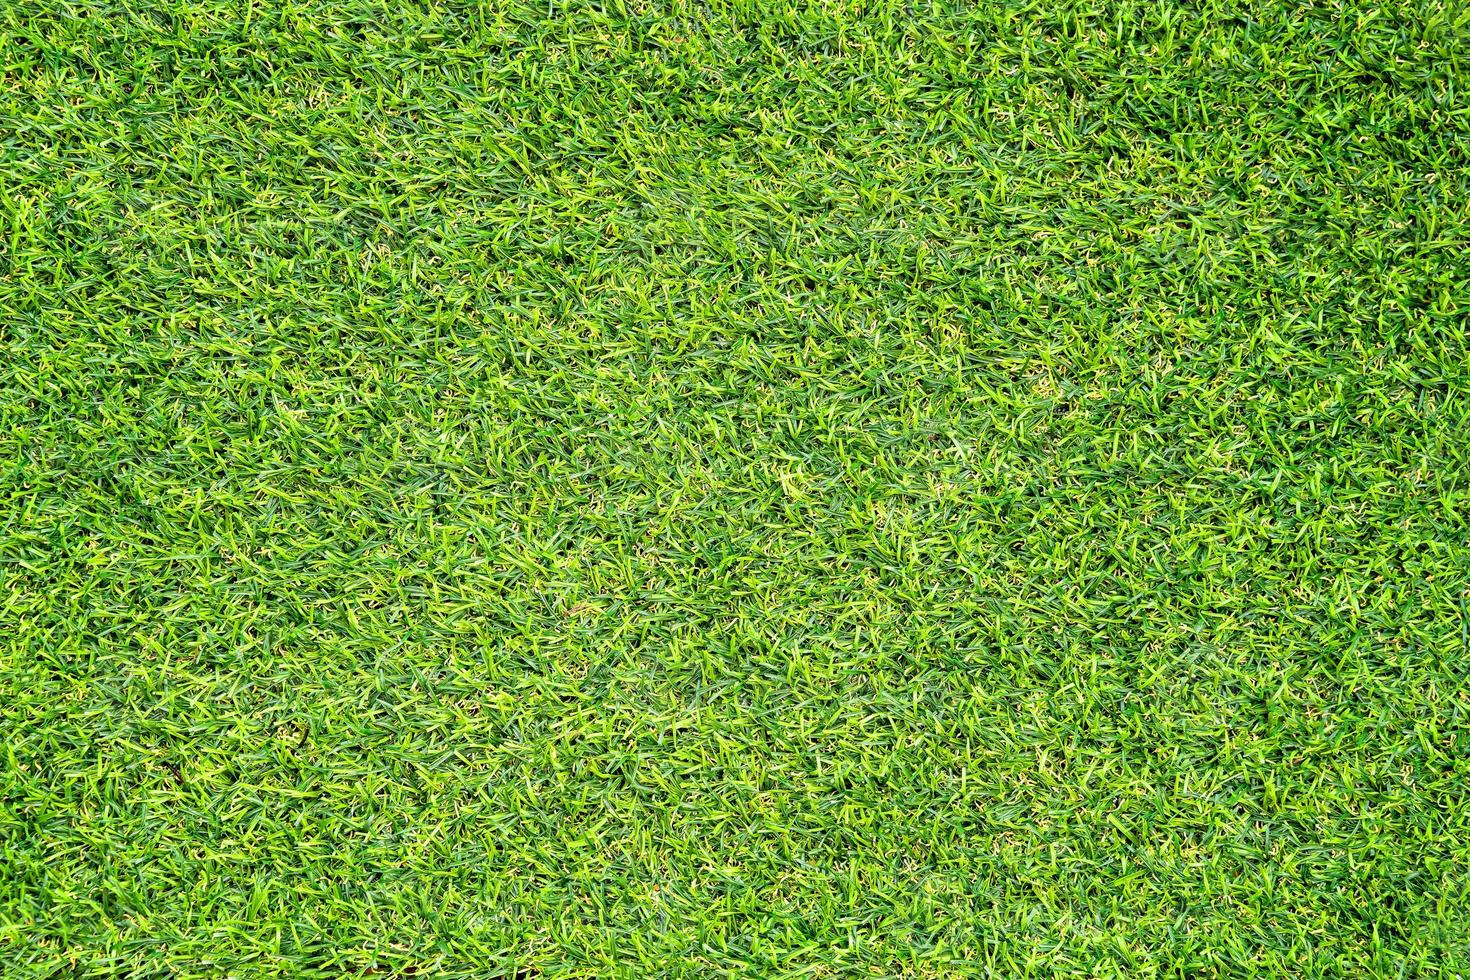 groen gras textuur voor achtergrond. groen gazon patroon en textuur achtergrond. foto